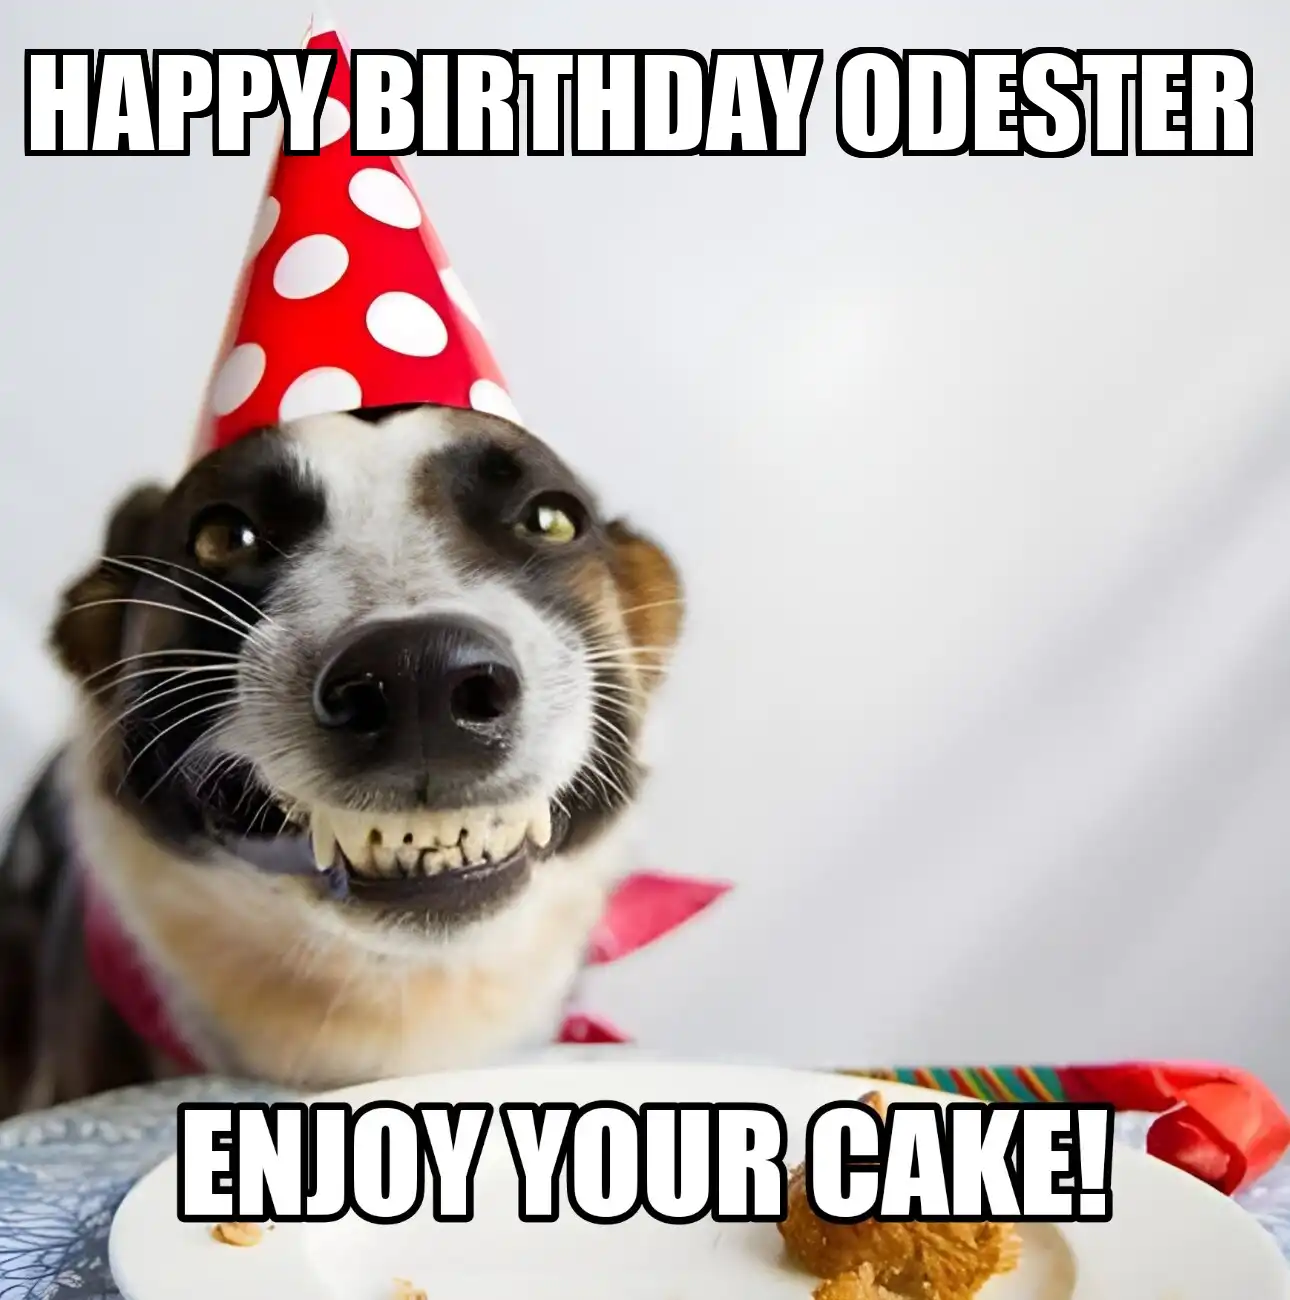 Happy Birthday Odester Enjoy Your Cake Dog Meme